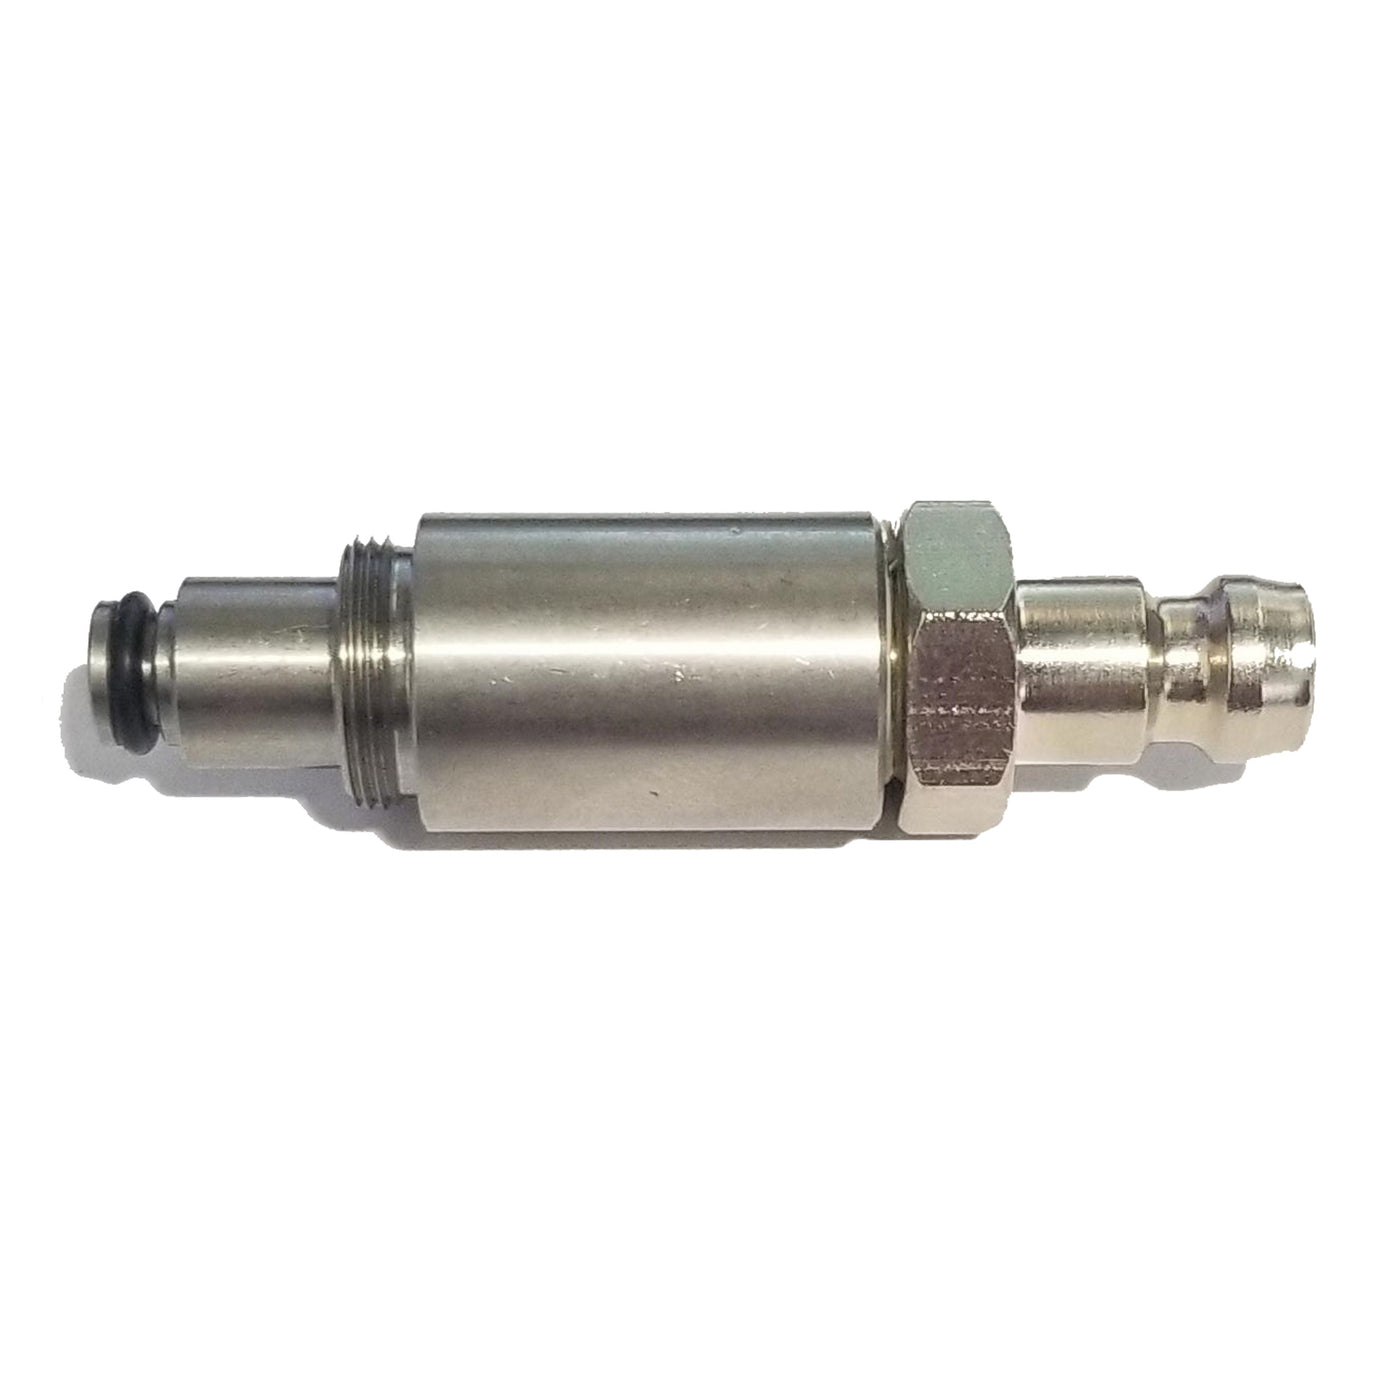 Oil Fill Adaptor for vacuum machine